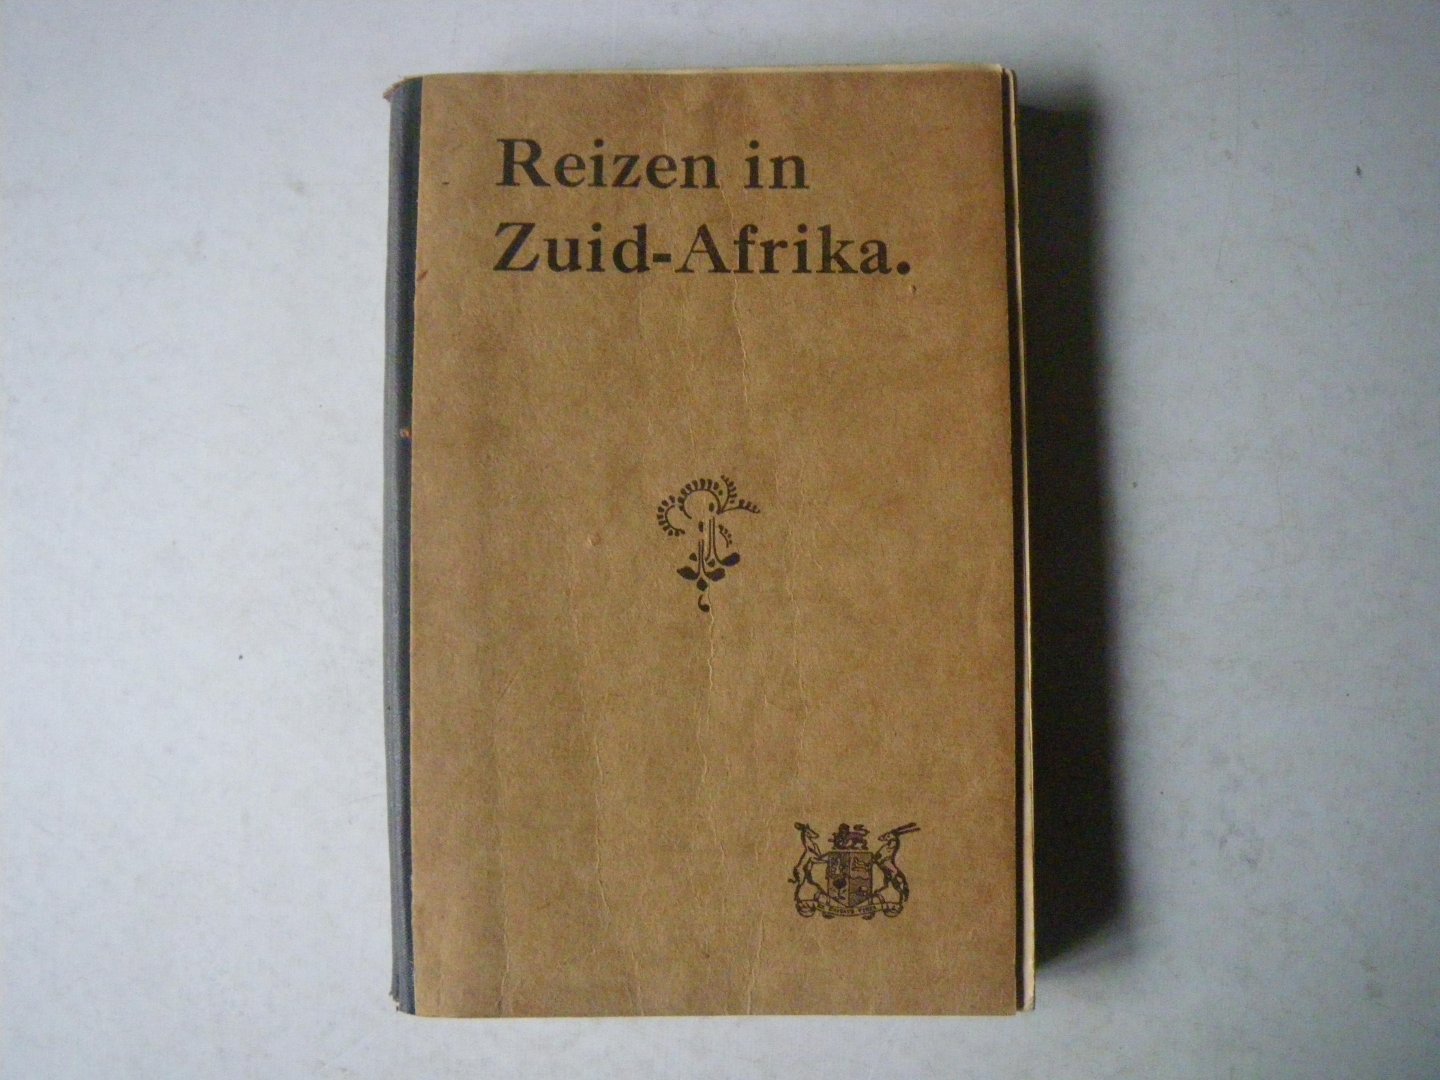 Uitgegeven onder het gezag van de Algemene bestuurder, Zuidafrikaanse Spoorwegem en Havens - Reizen in Zuid- Afrika derde druk 1927